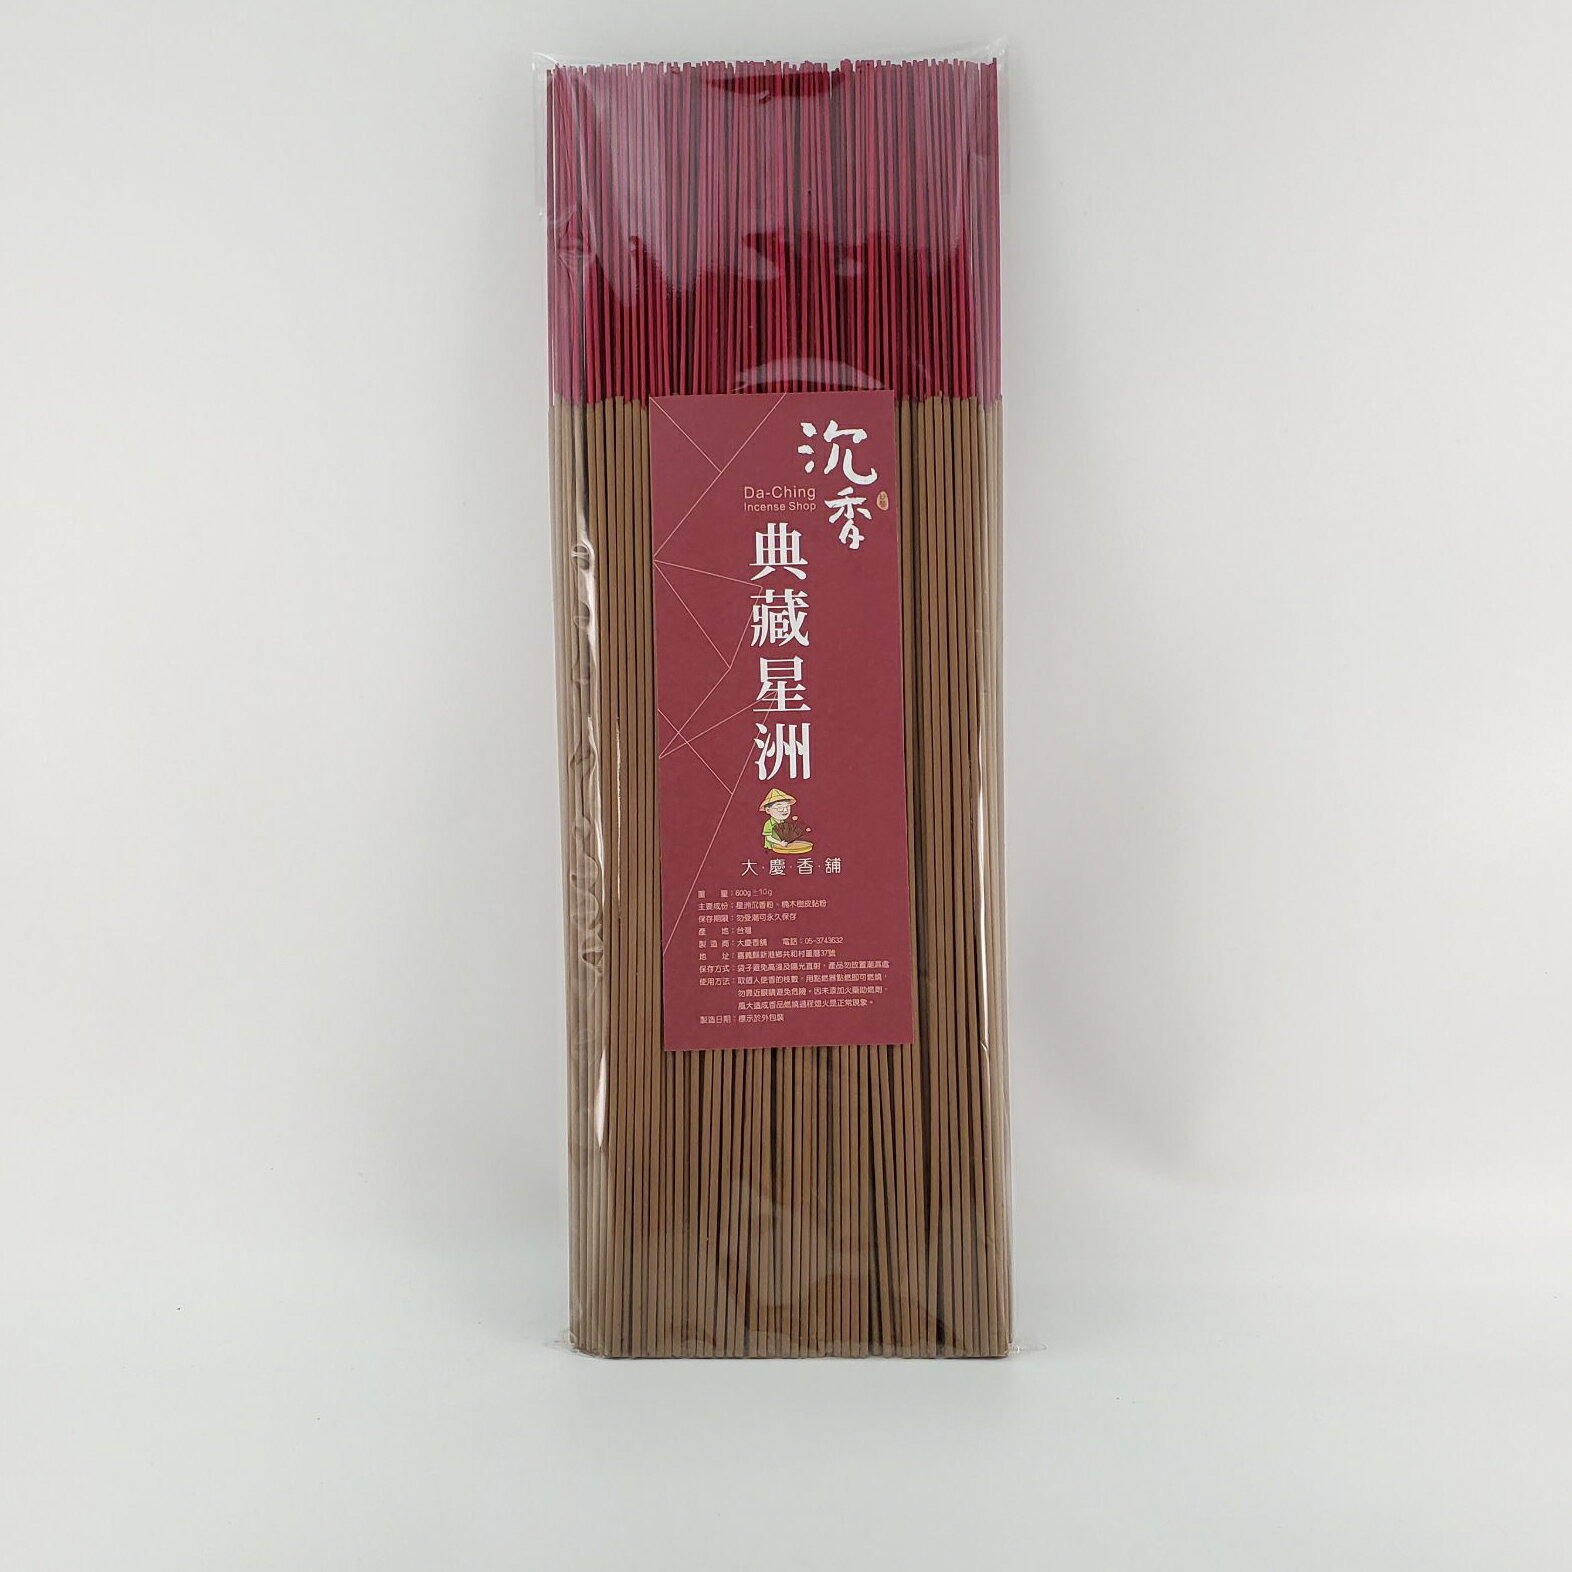 立香 沉香類 典藏星洲沉香 (一尺三) 台灣製造天然 安全 環保